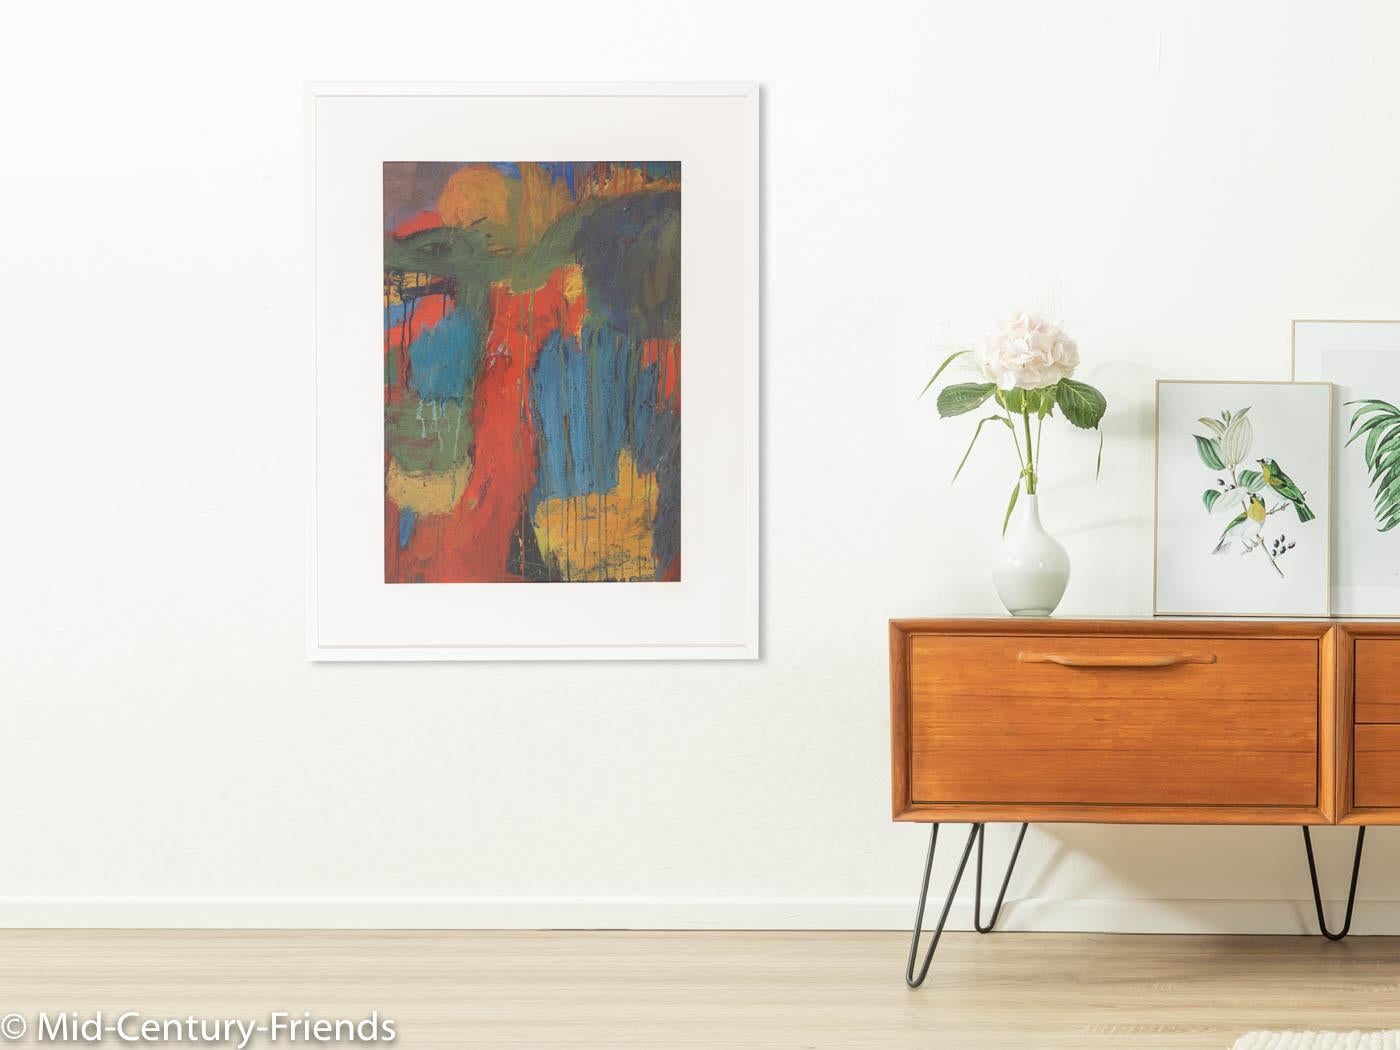 Luc DELVAUX Abstraktes Gemälde in kräftigen Farben mit spielerischem Farbverlauf. Aufhängefertig, gerahmt mit Passepartout in einem handgefertigten Echtholz-Bilderrahmen in Weiß hinter entspiegeltem Acrylglas.
Größe ohne Rahmen: B 48 cm x H 68 cm.